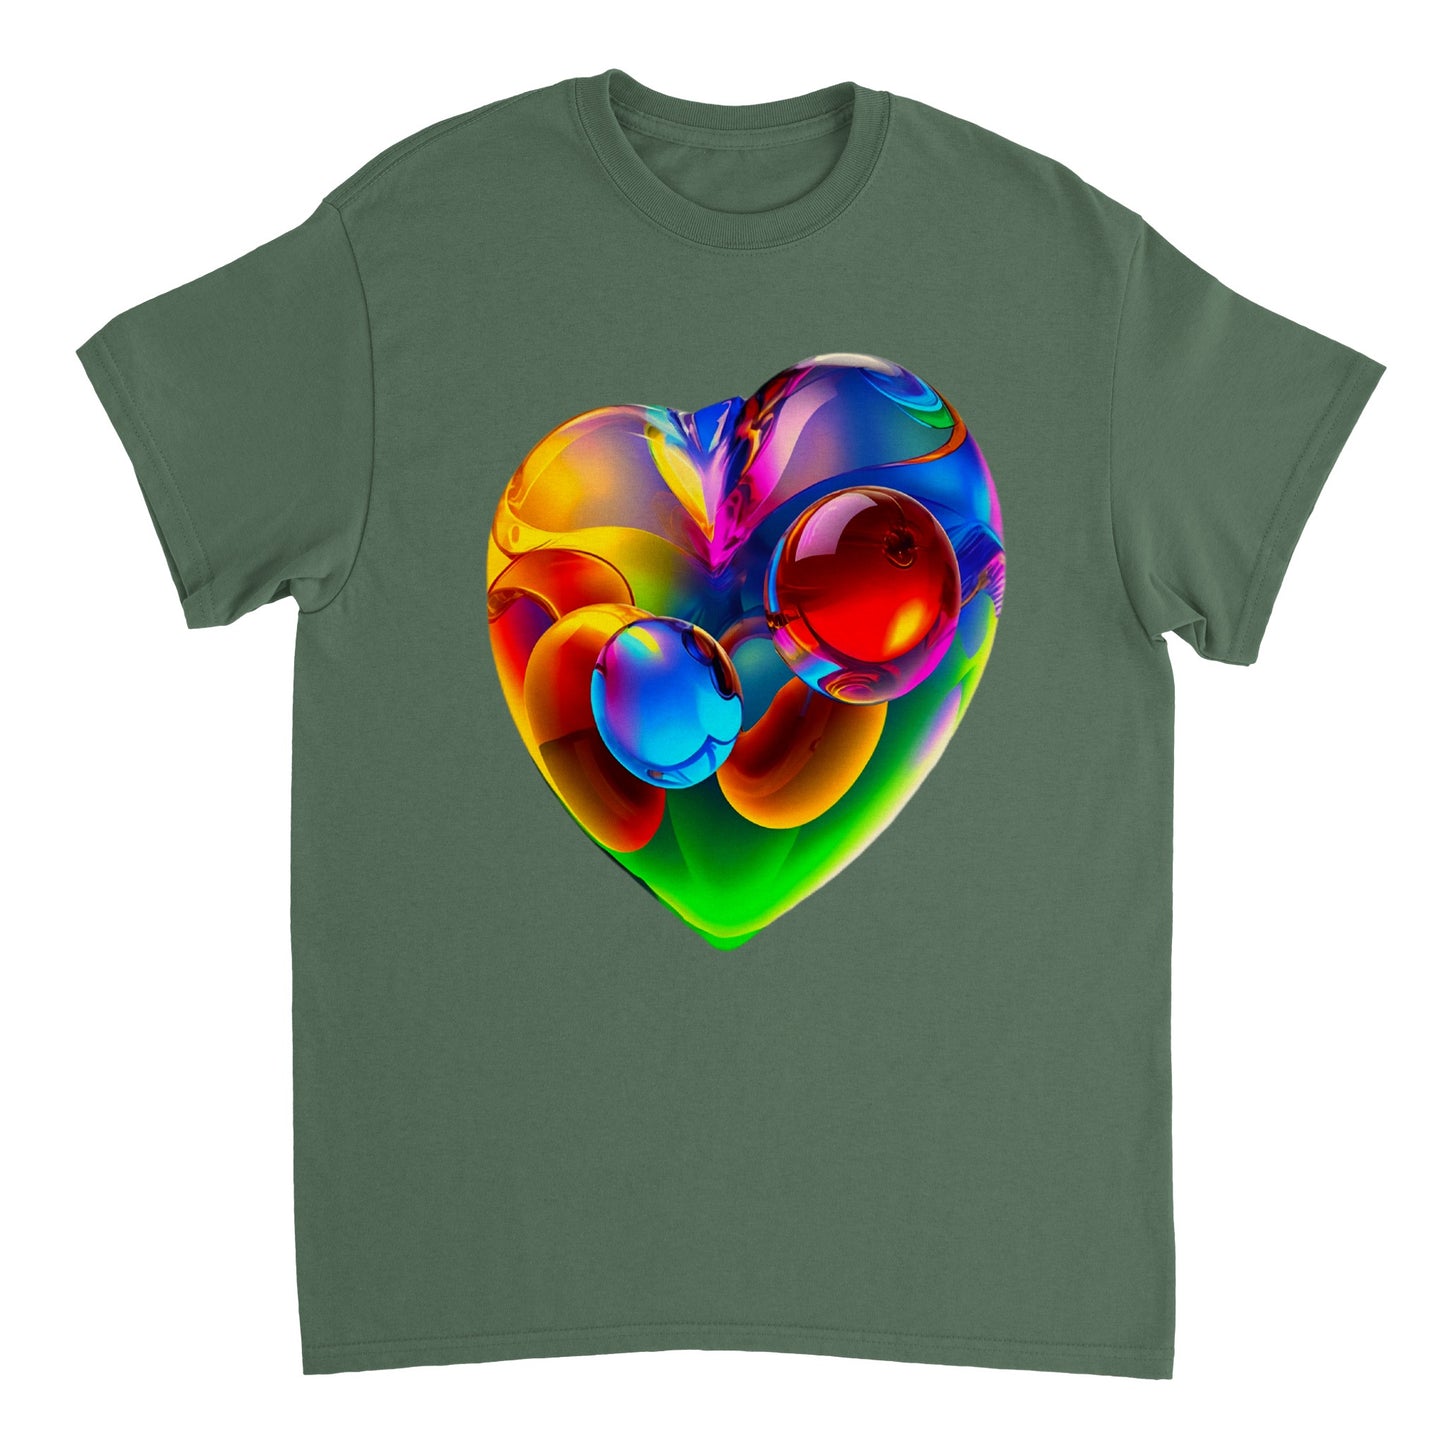 Love Heart - Heavyweight Unisex Crewneck T-shirt 64